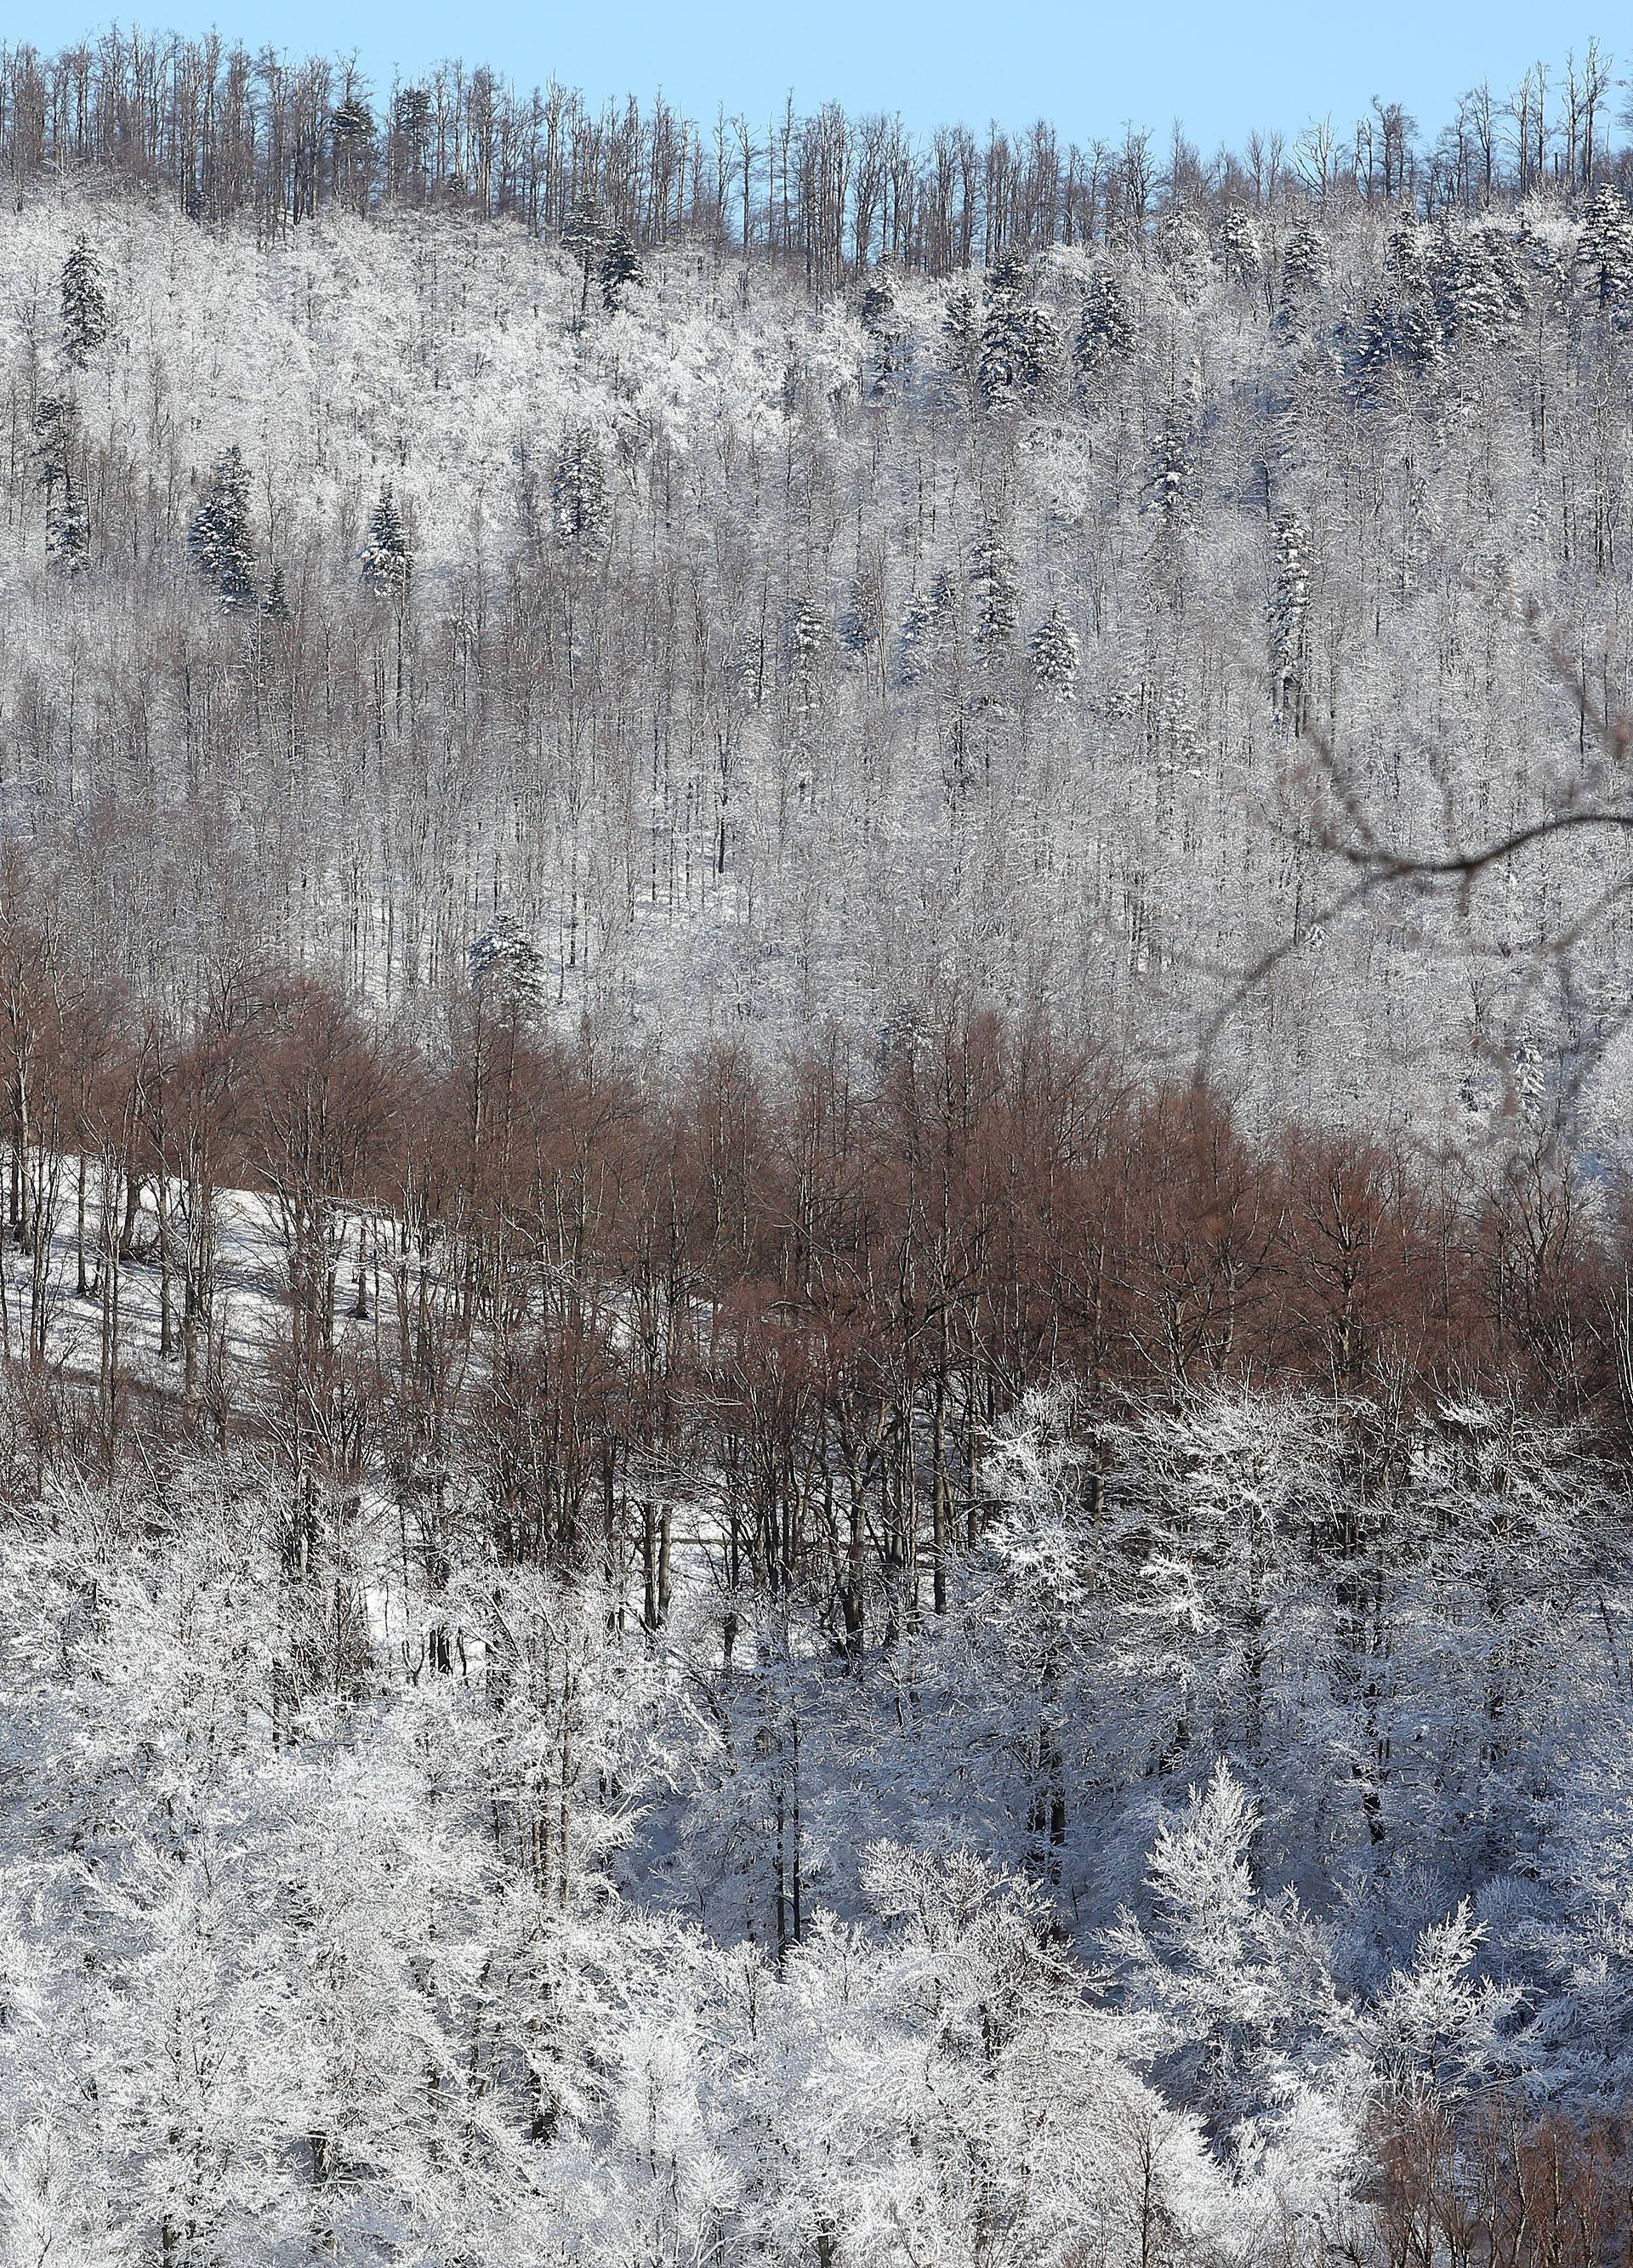 Fotografije Gorskog kotara pod snijegom izgledaju kao iz bajke